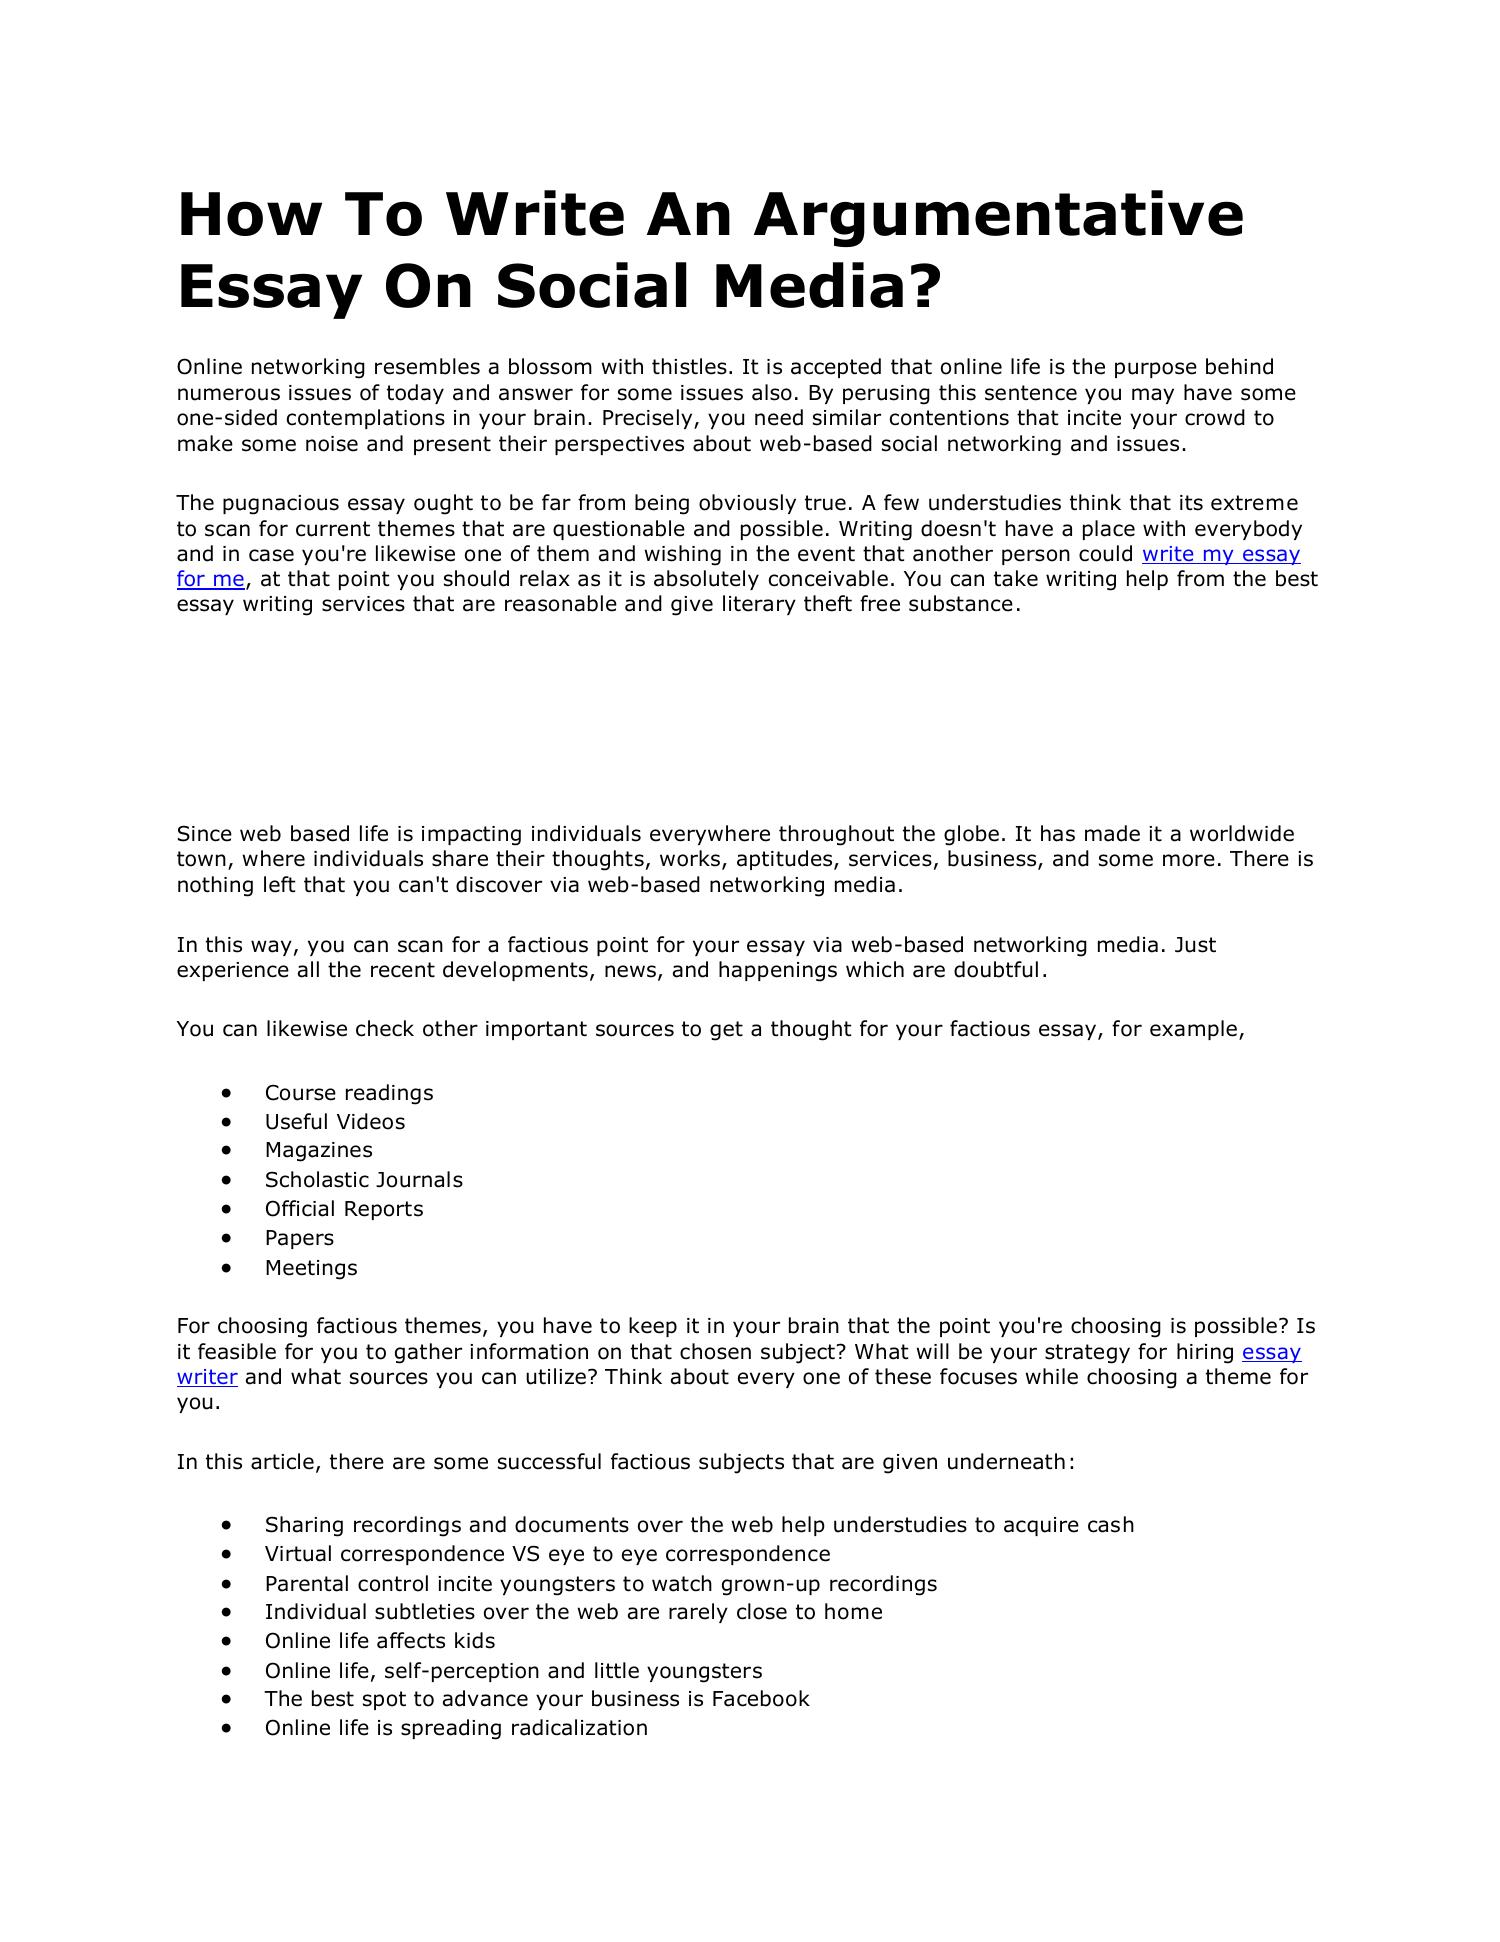 networking essay topics